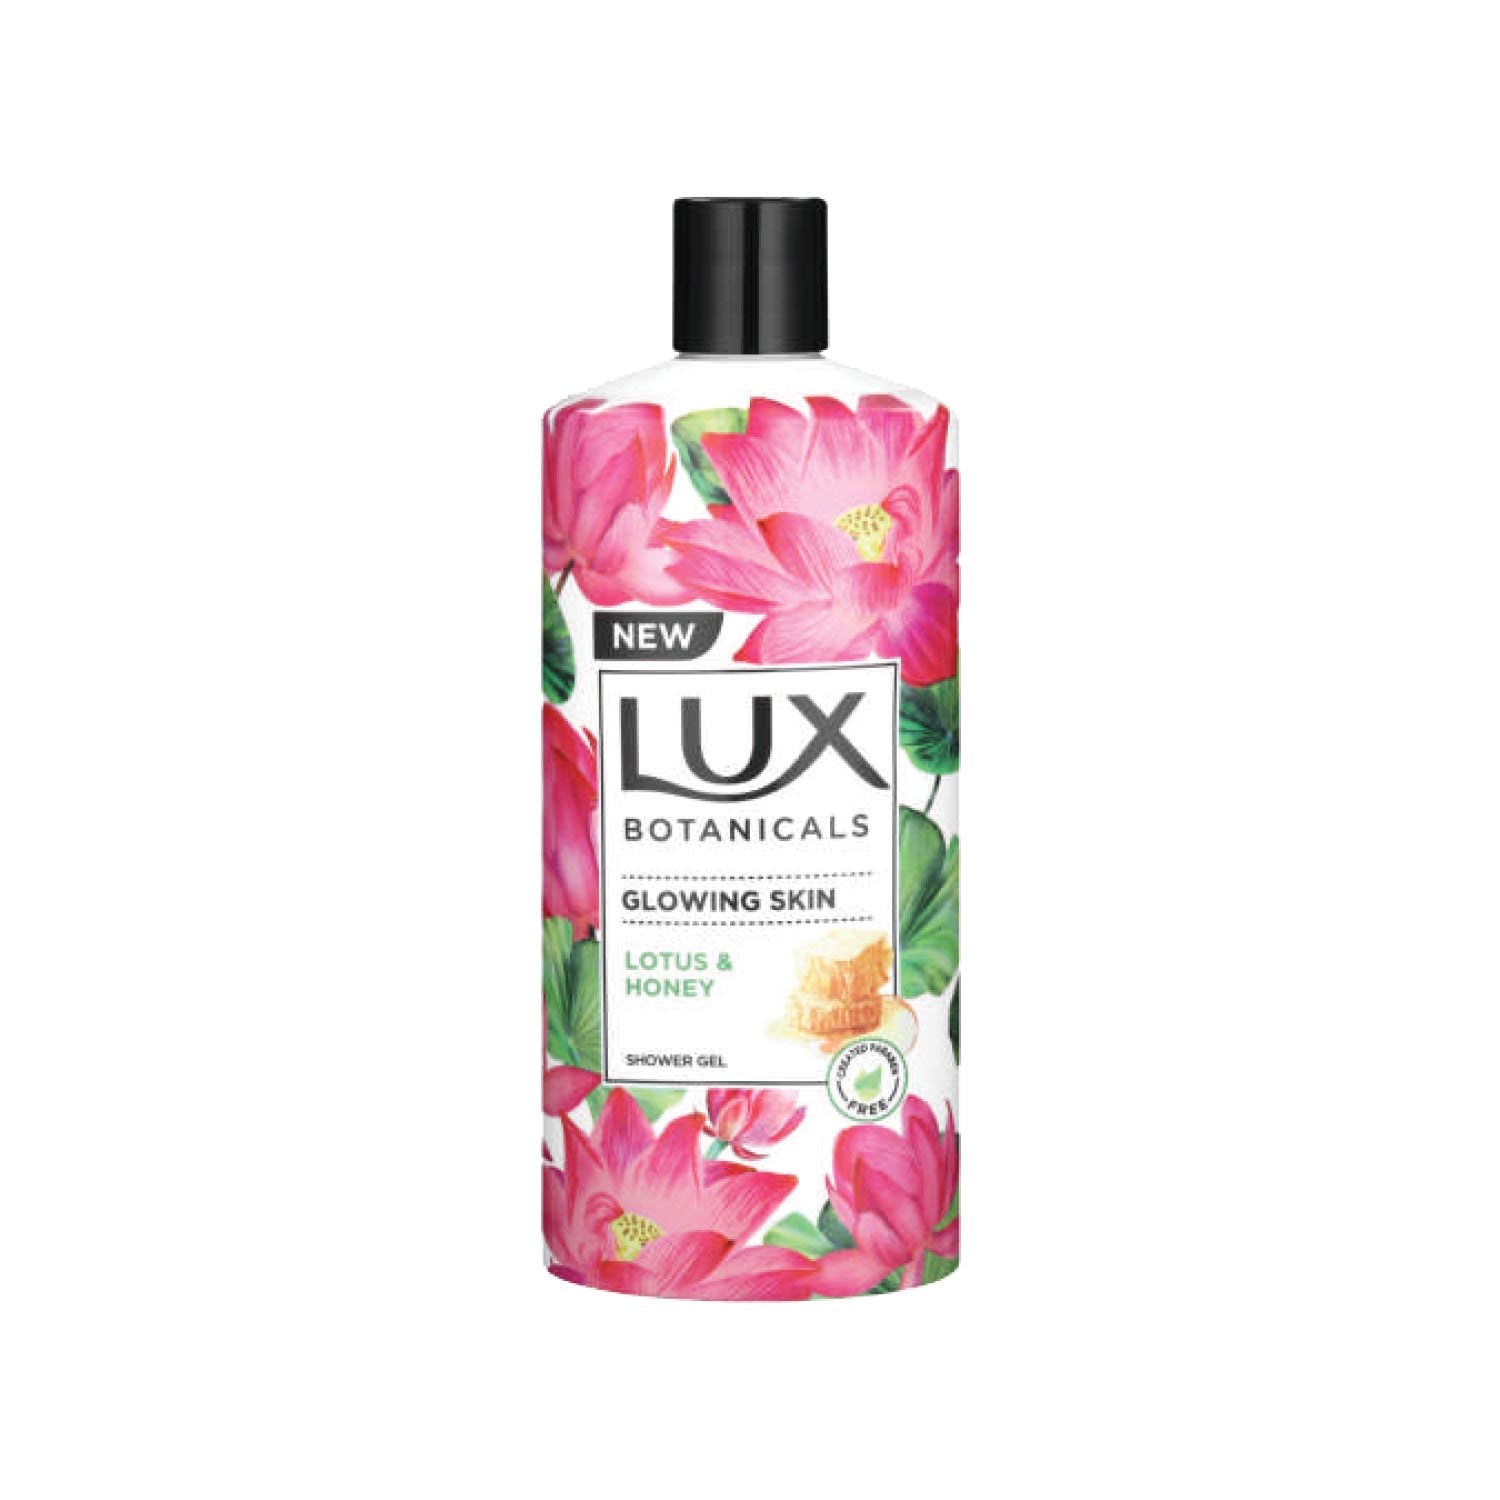 LUX Botanicals Body Wash Assorted, 400ml